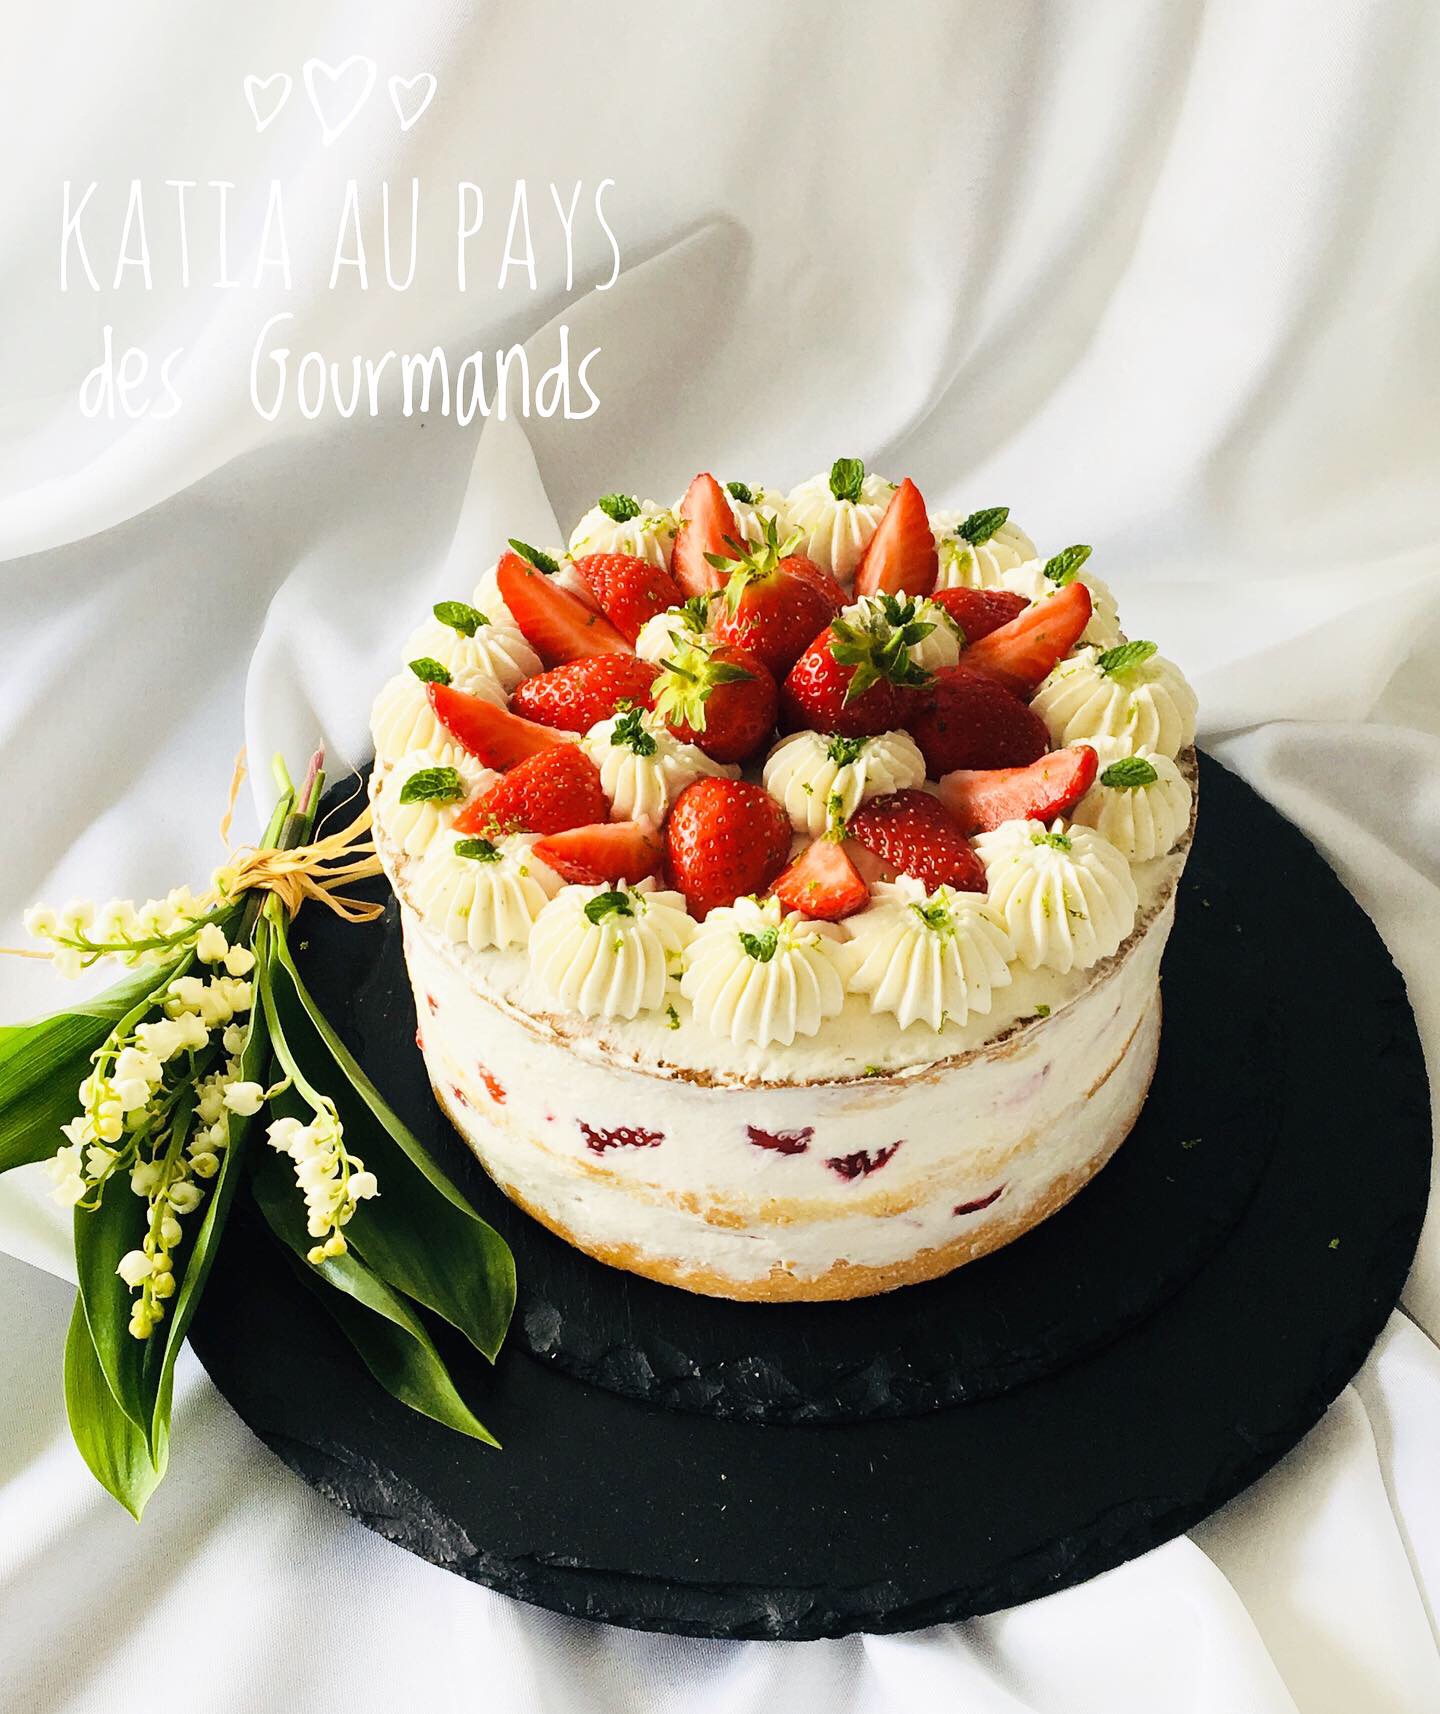 Naked cake aux fraises - recette de gâteau festif